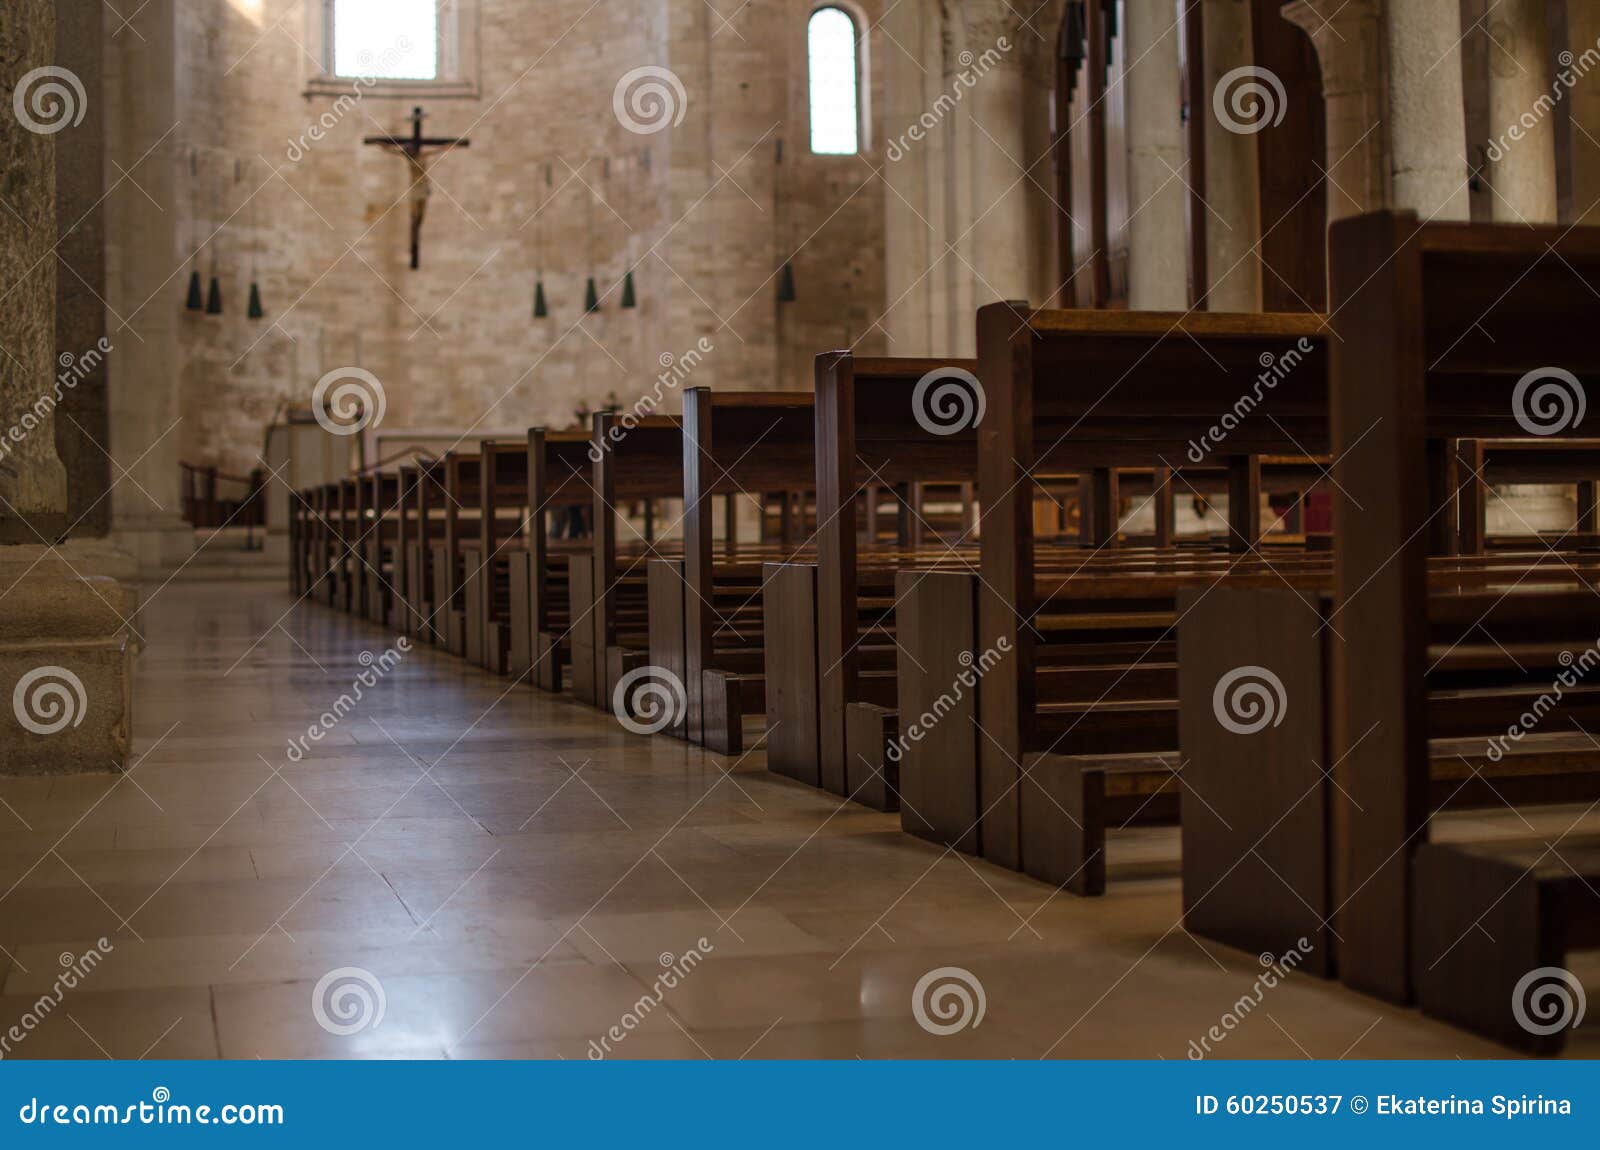 benches of a catolic italian church